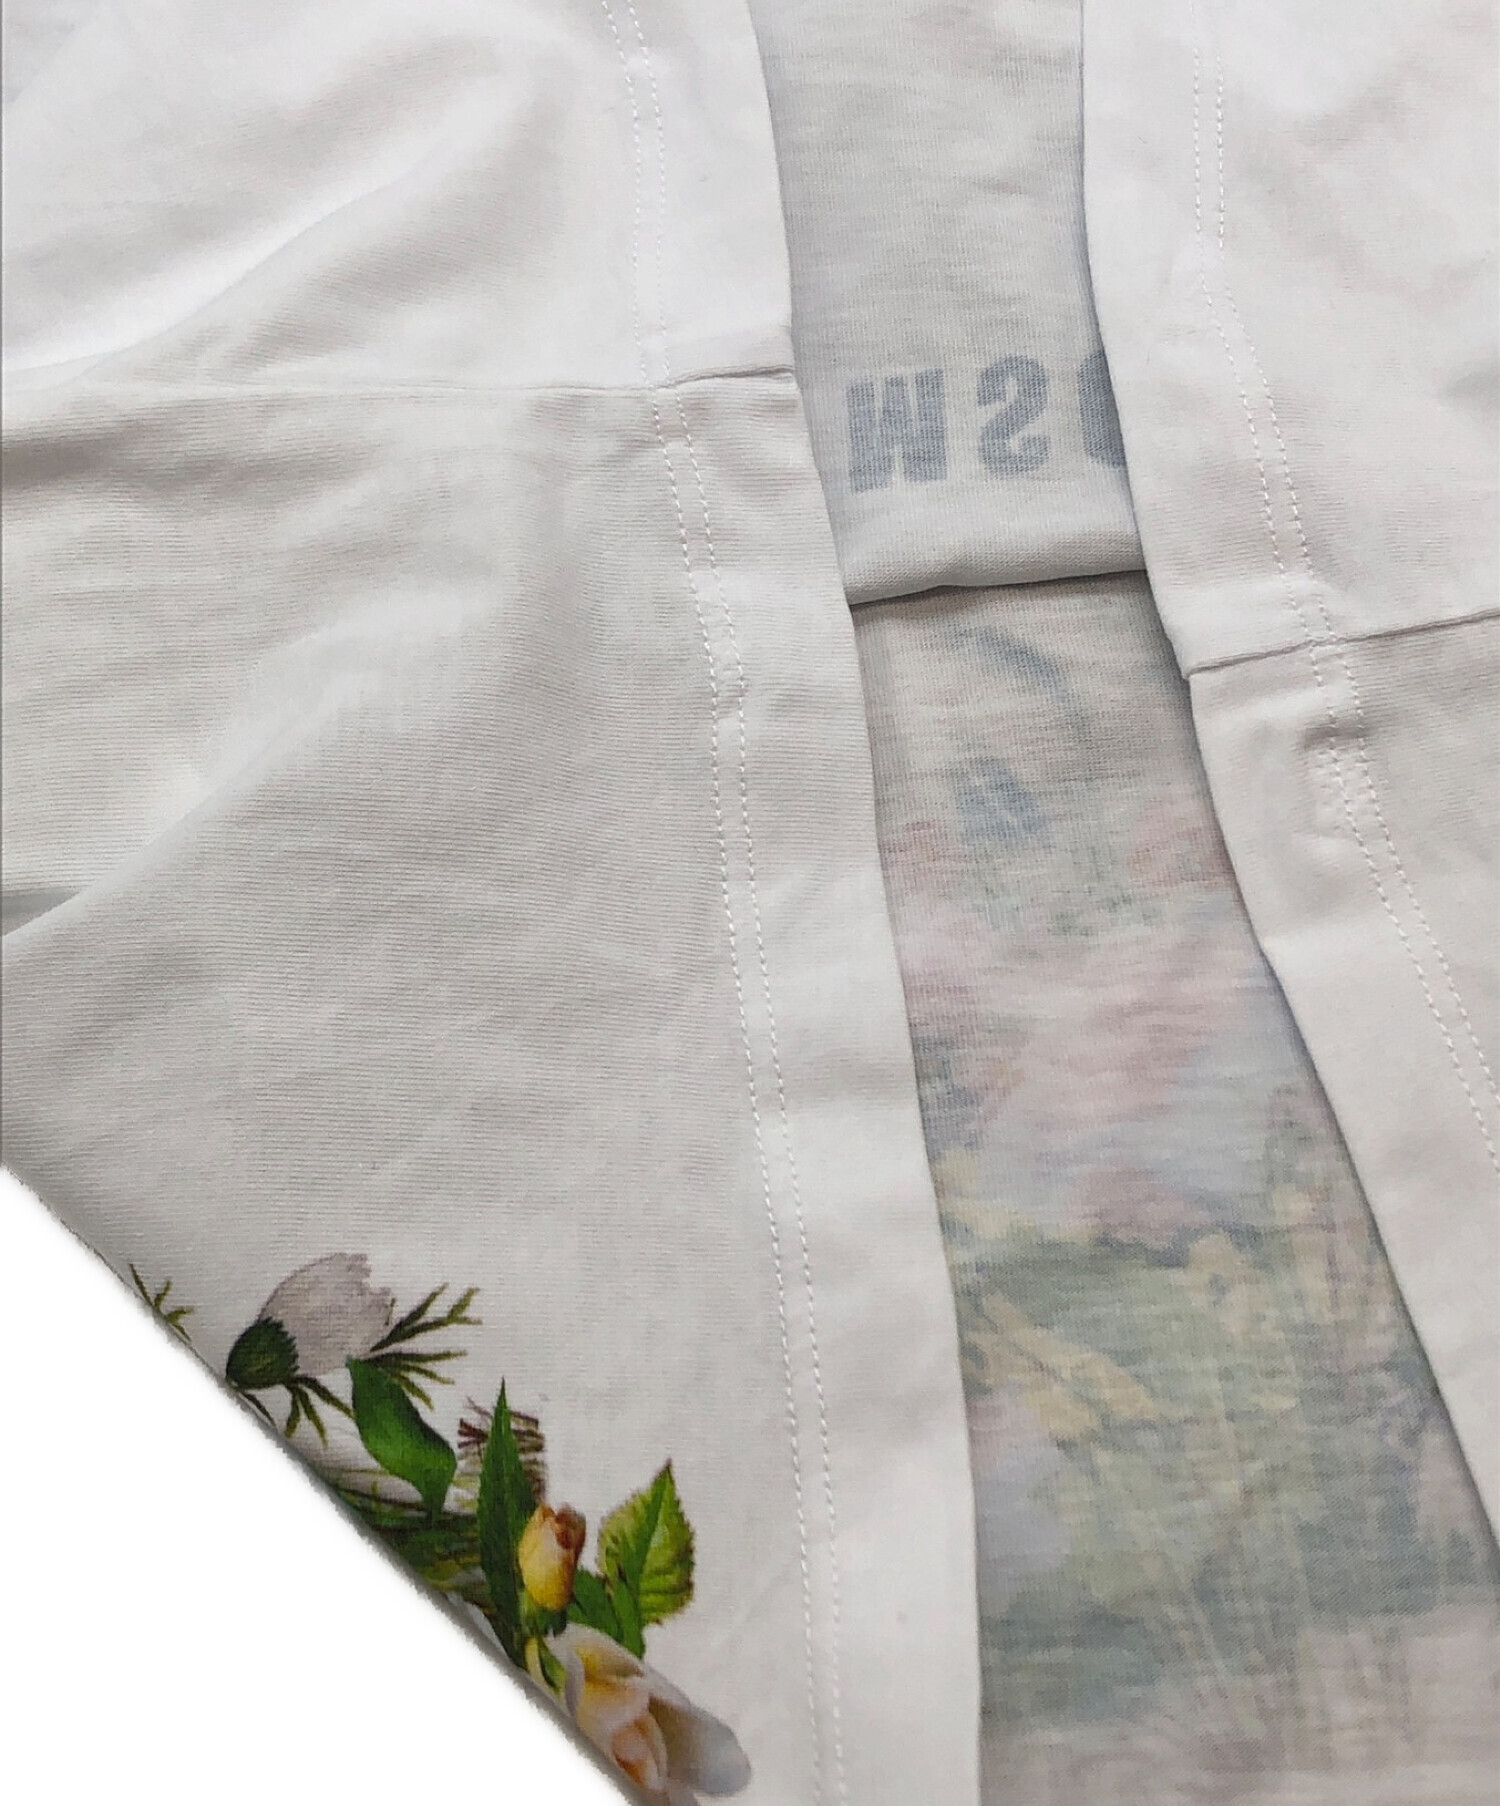 MSGM (エムエスジーエム) フラワーネコ Tシャツ ホワイト サイズ:SIZE S